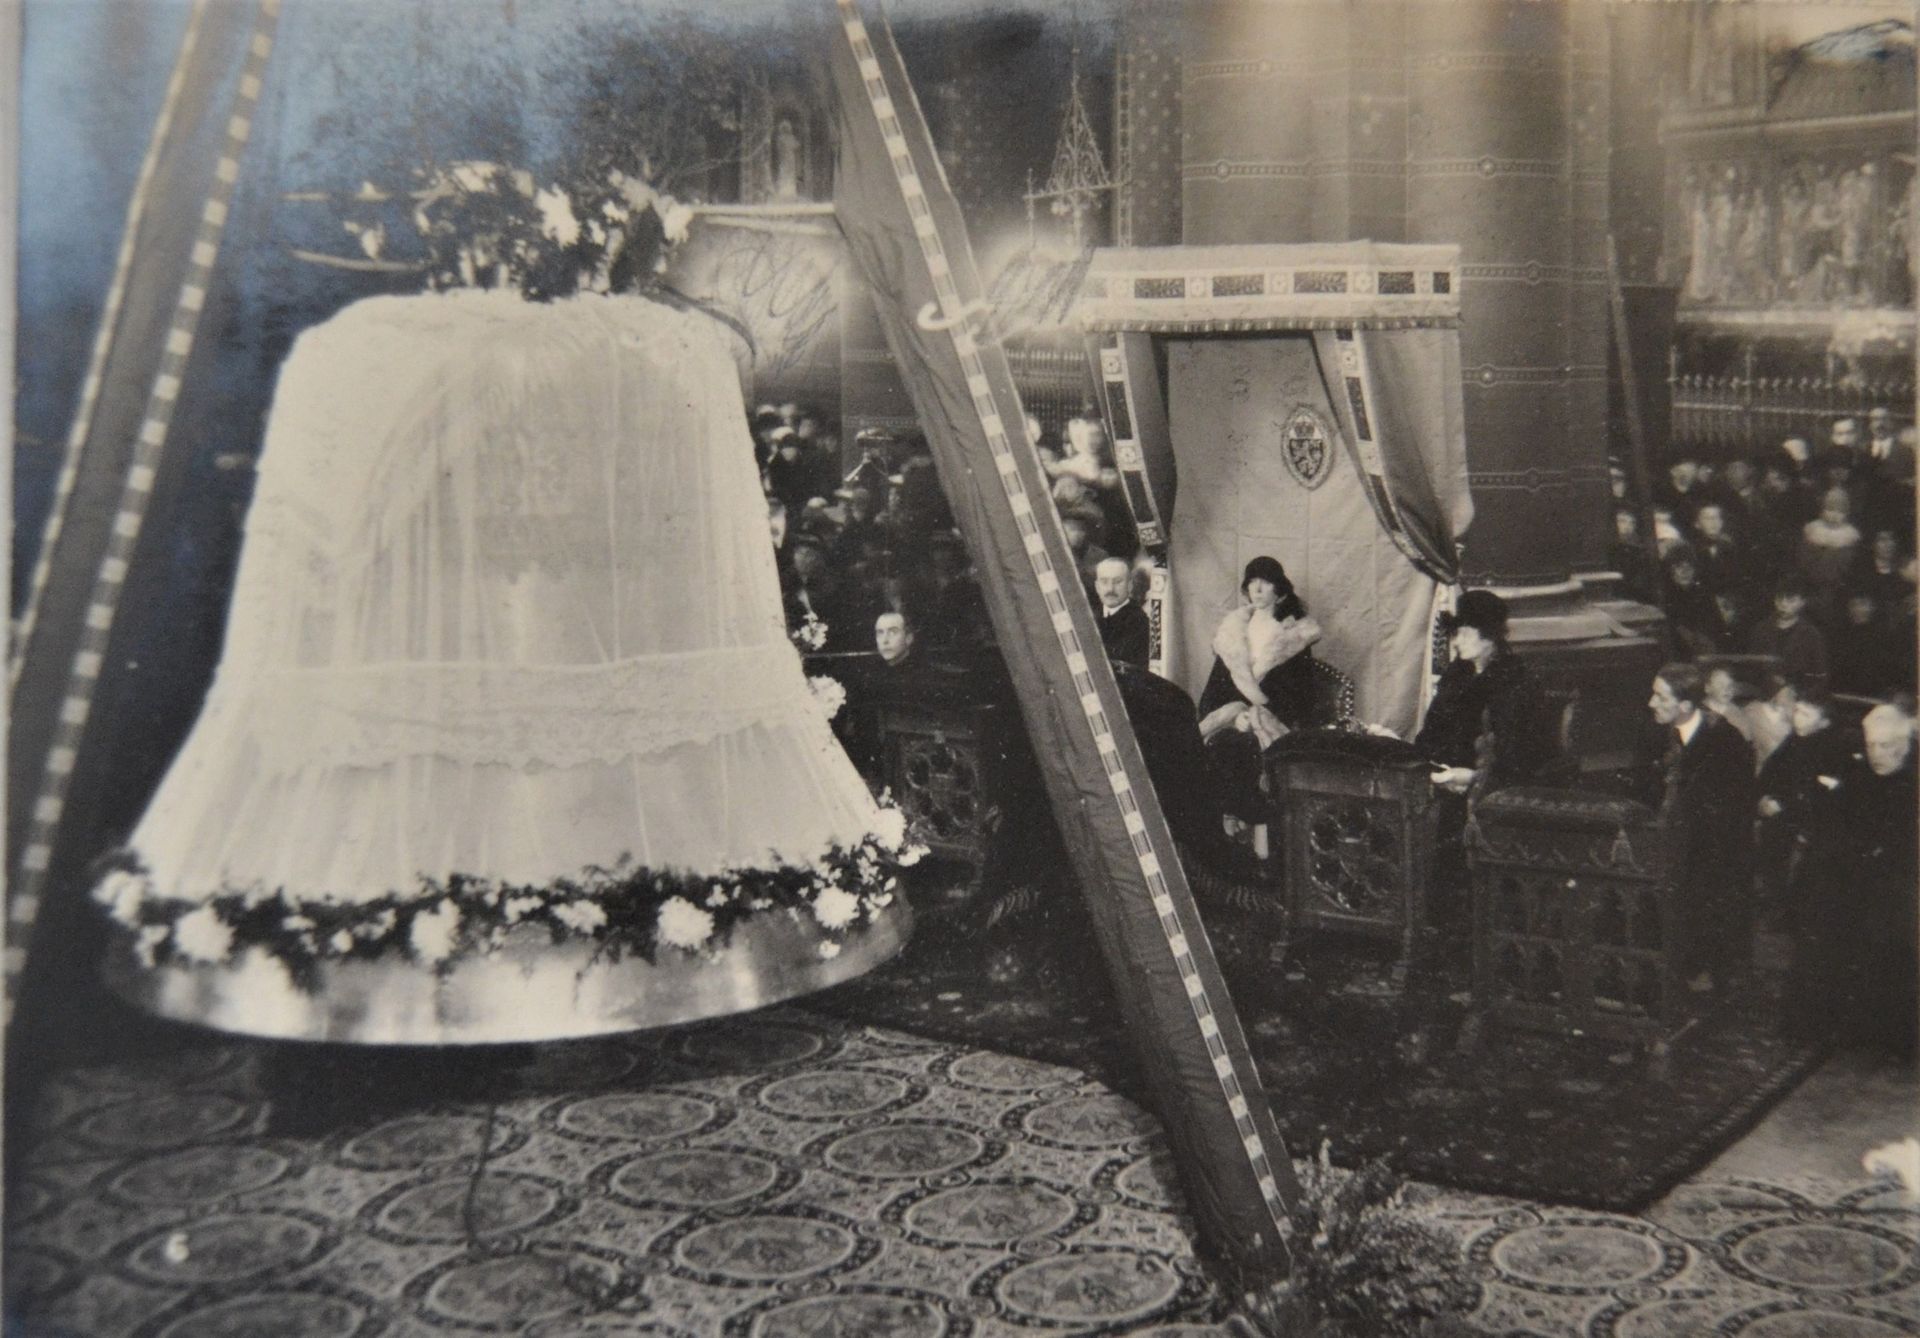 Le baptême du bourdon Elisabeth, en présence de la reine et de sa dame d’honneur, Ghislaine de Riquet, comtesse de Caraman-Chimay.